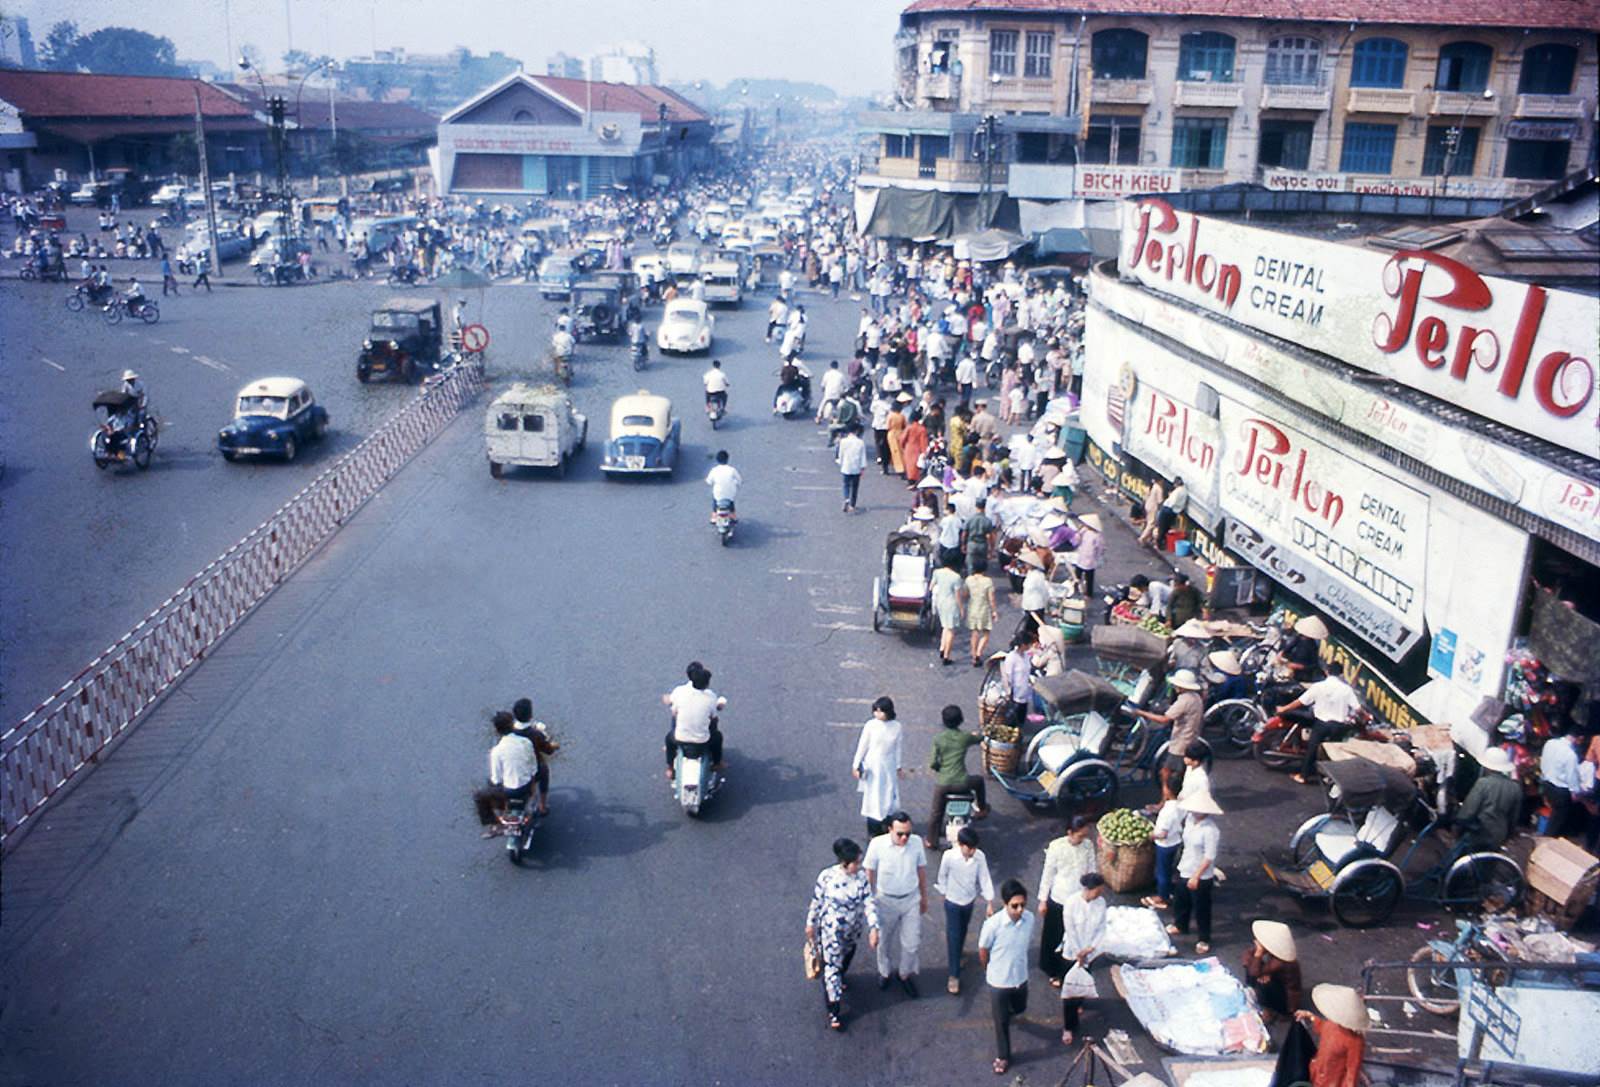 SAIGON 1972 - Chợ Bến Thành hình chụp từ trên cầu vượt bộ hành từ bùng binh đi qua chợ